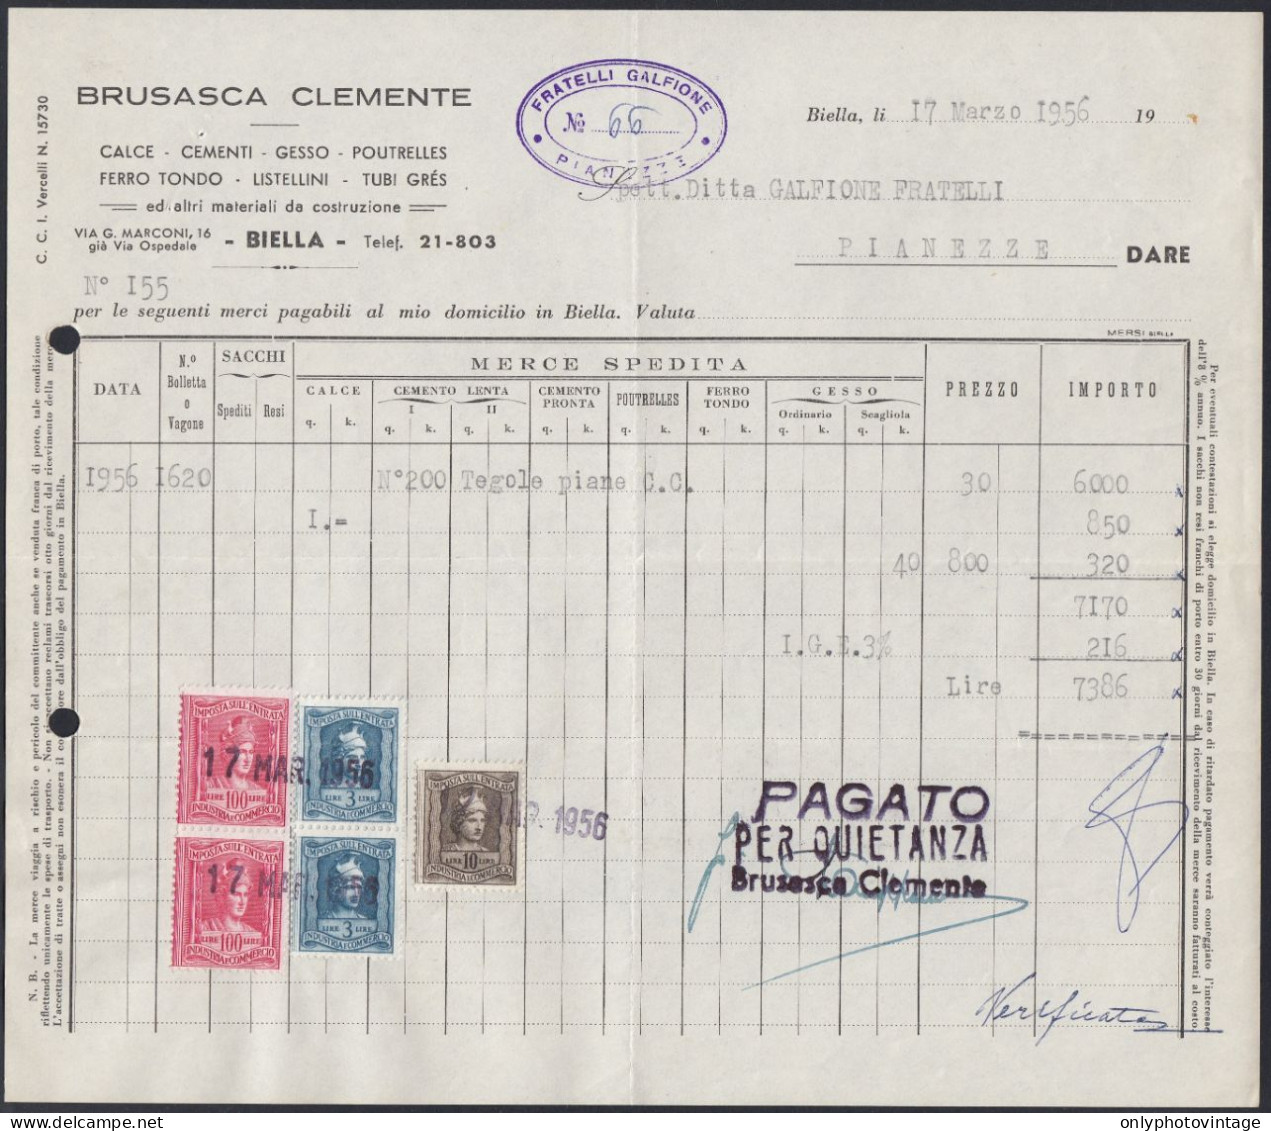 Biella 1956 - Brusasca Clemente - Materiale Da Costruzione - Fattura - Italië